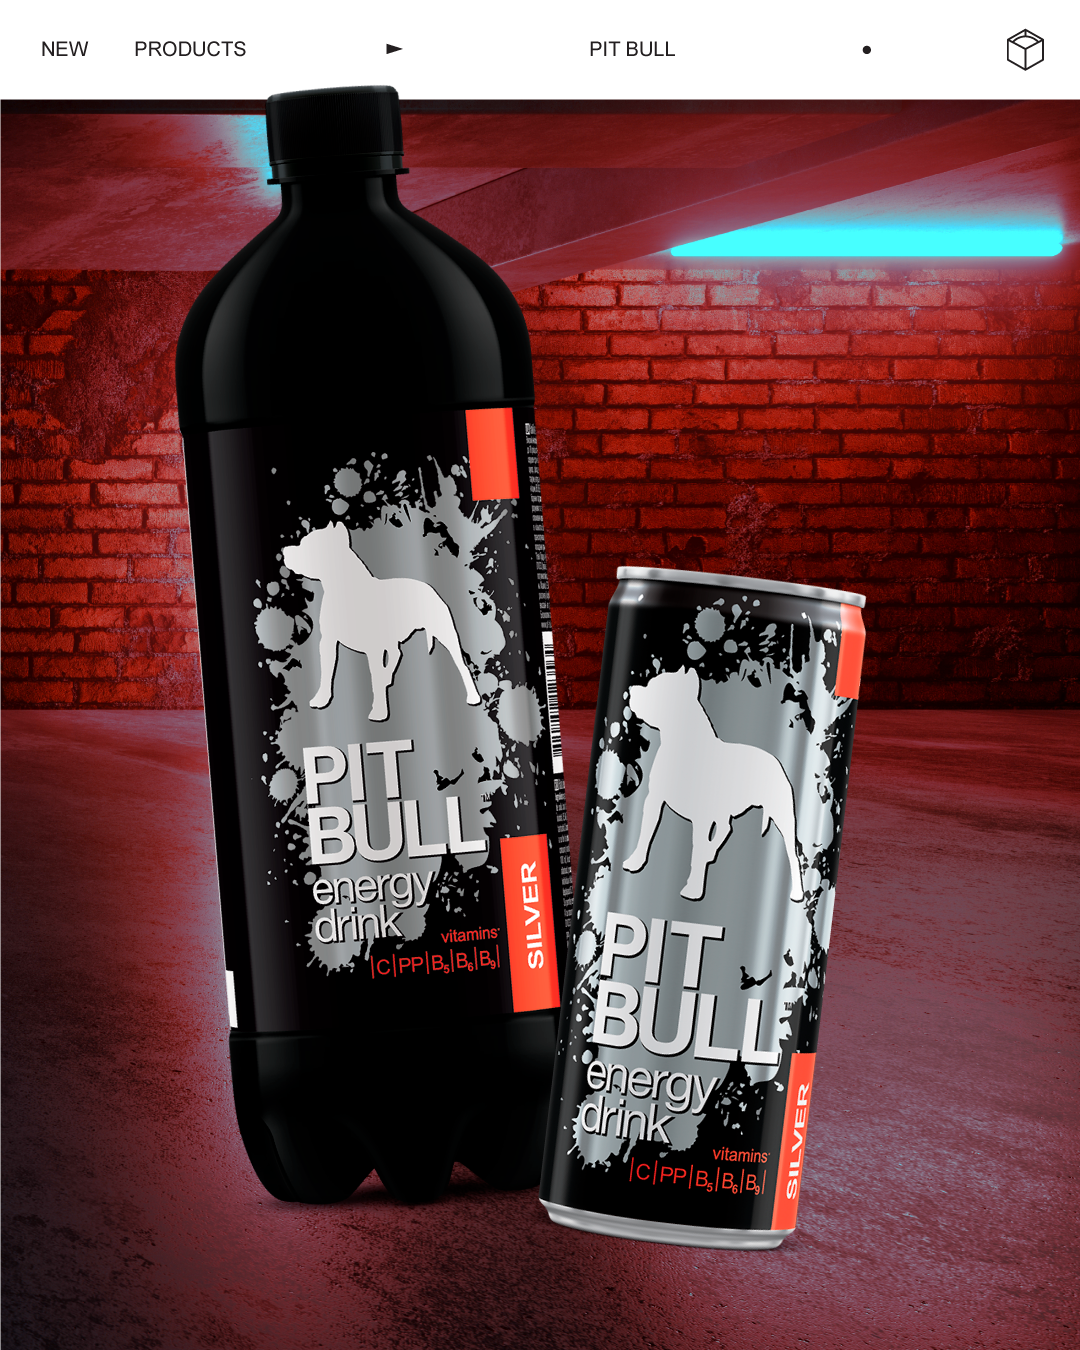 Енергетичний напій PIT BULL Silver дебютує одразу в двох форматах: алюмінієвих банках й великих літрових пляшках